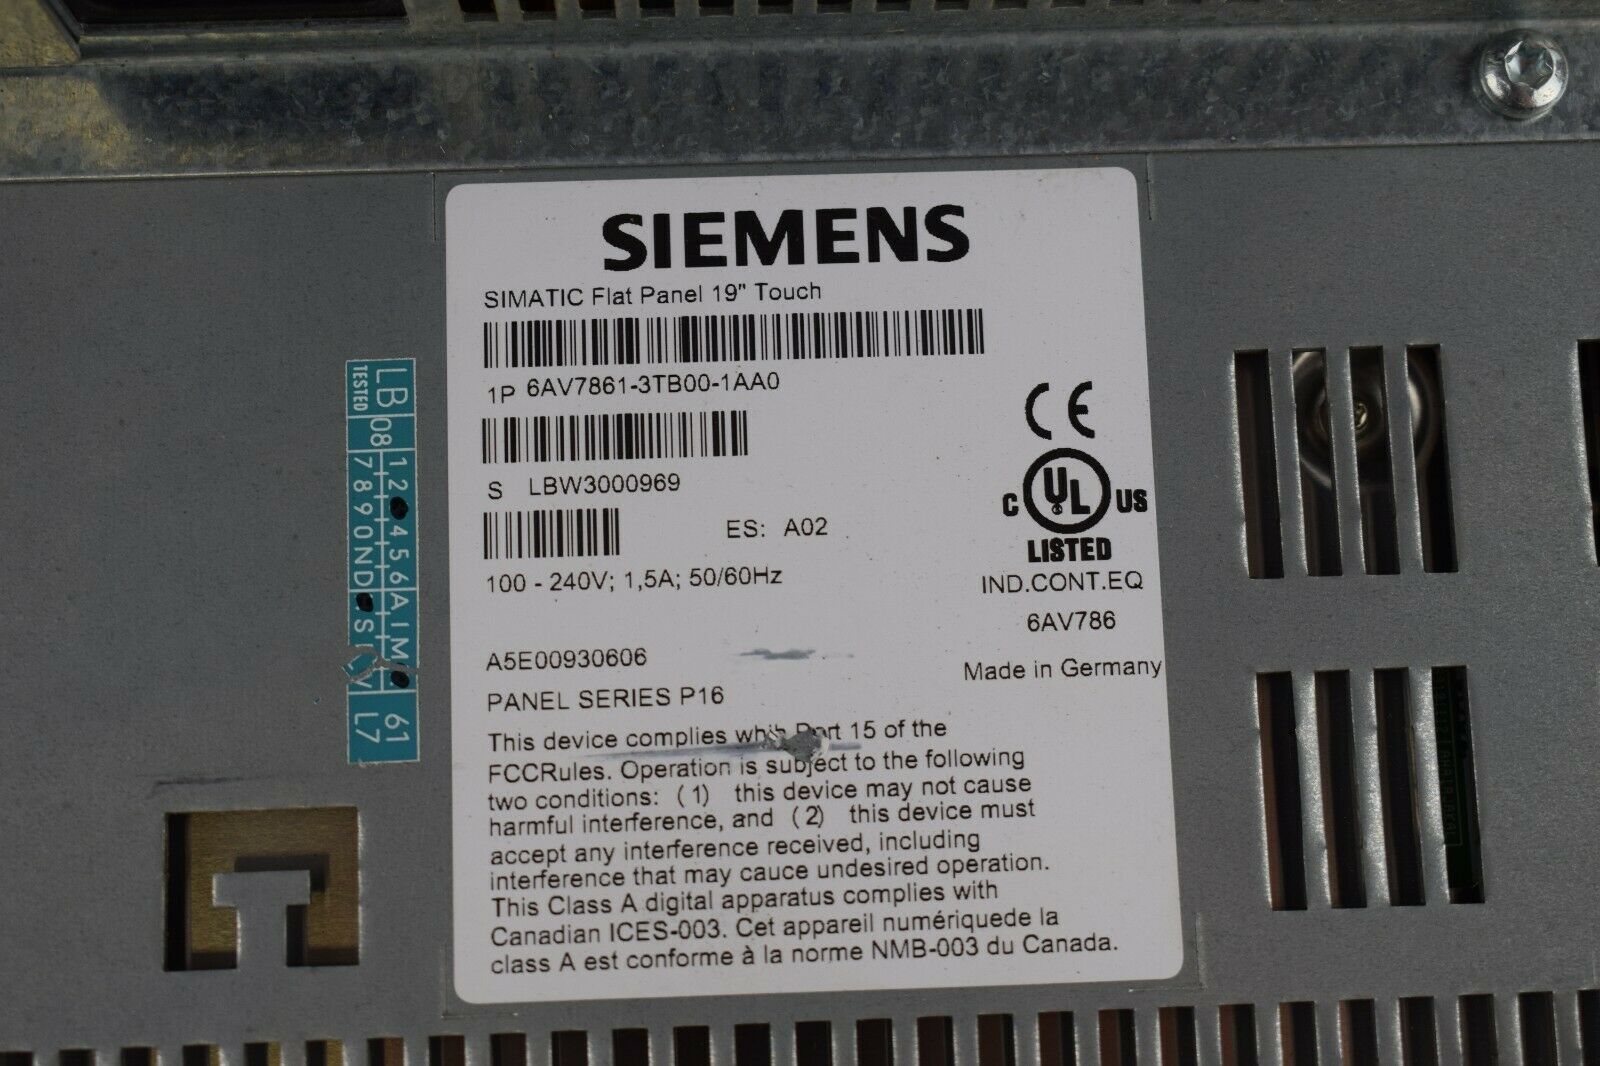 Siemens simatic Flat Panel 19" Touch 6AV7861-3TB00-1AA0 / 6AV7 861-3TB00-1AA0